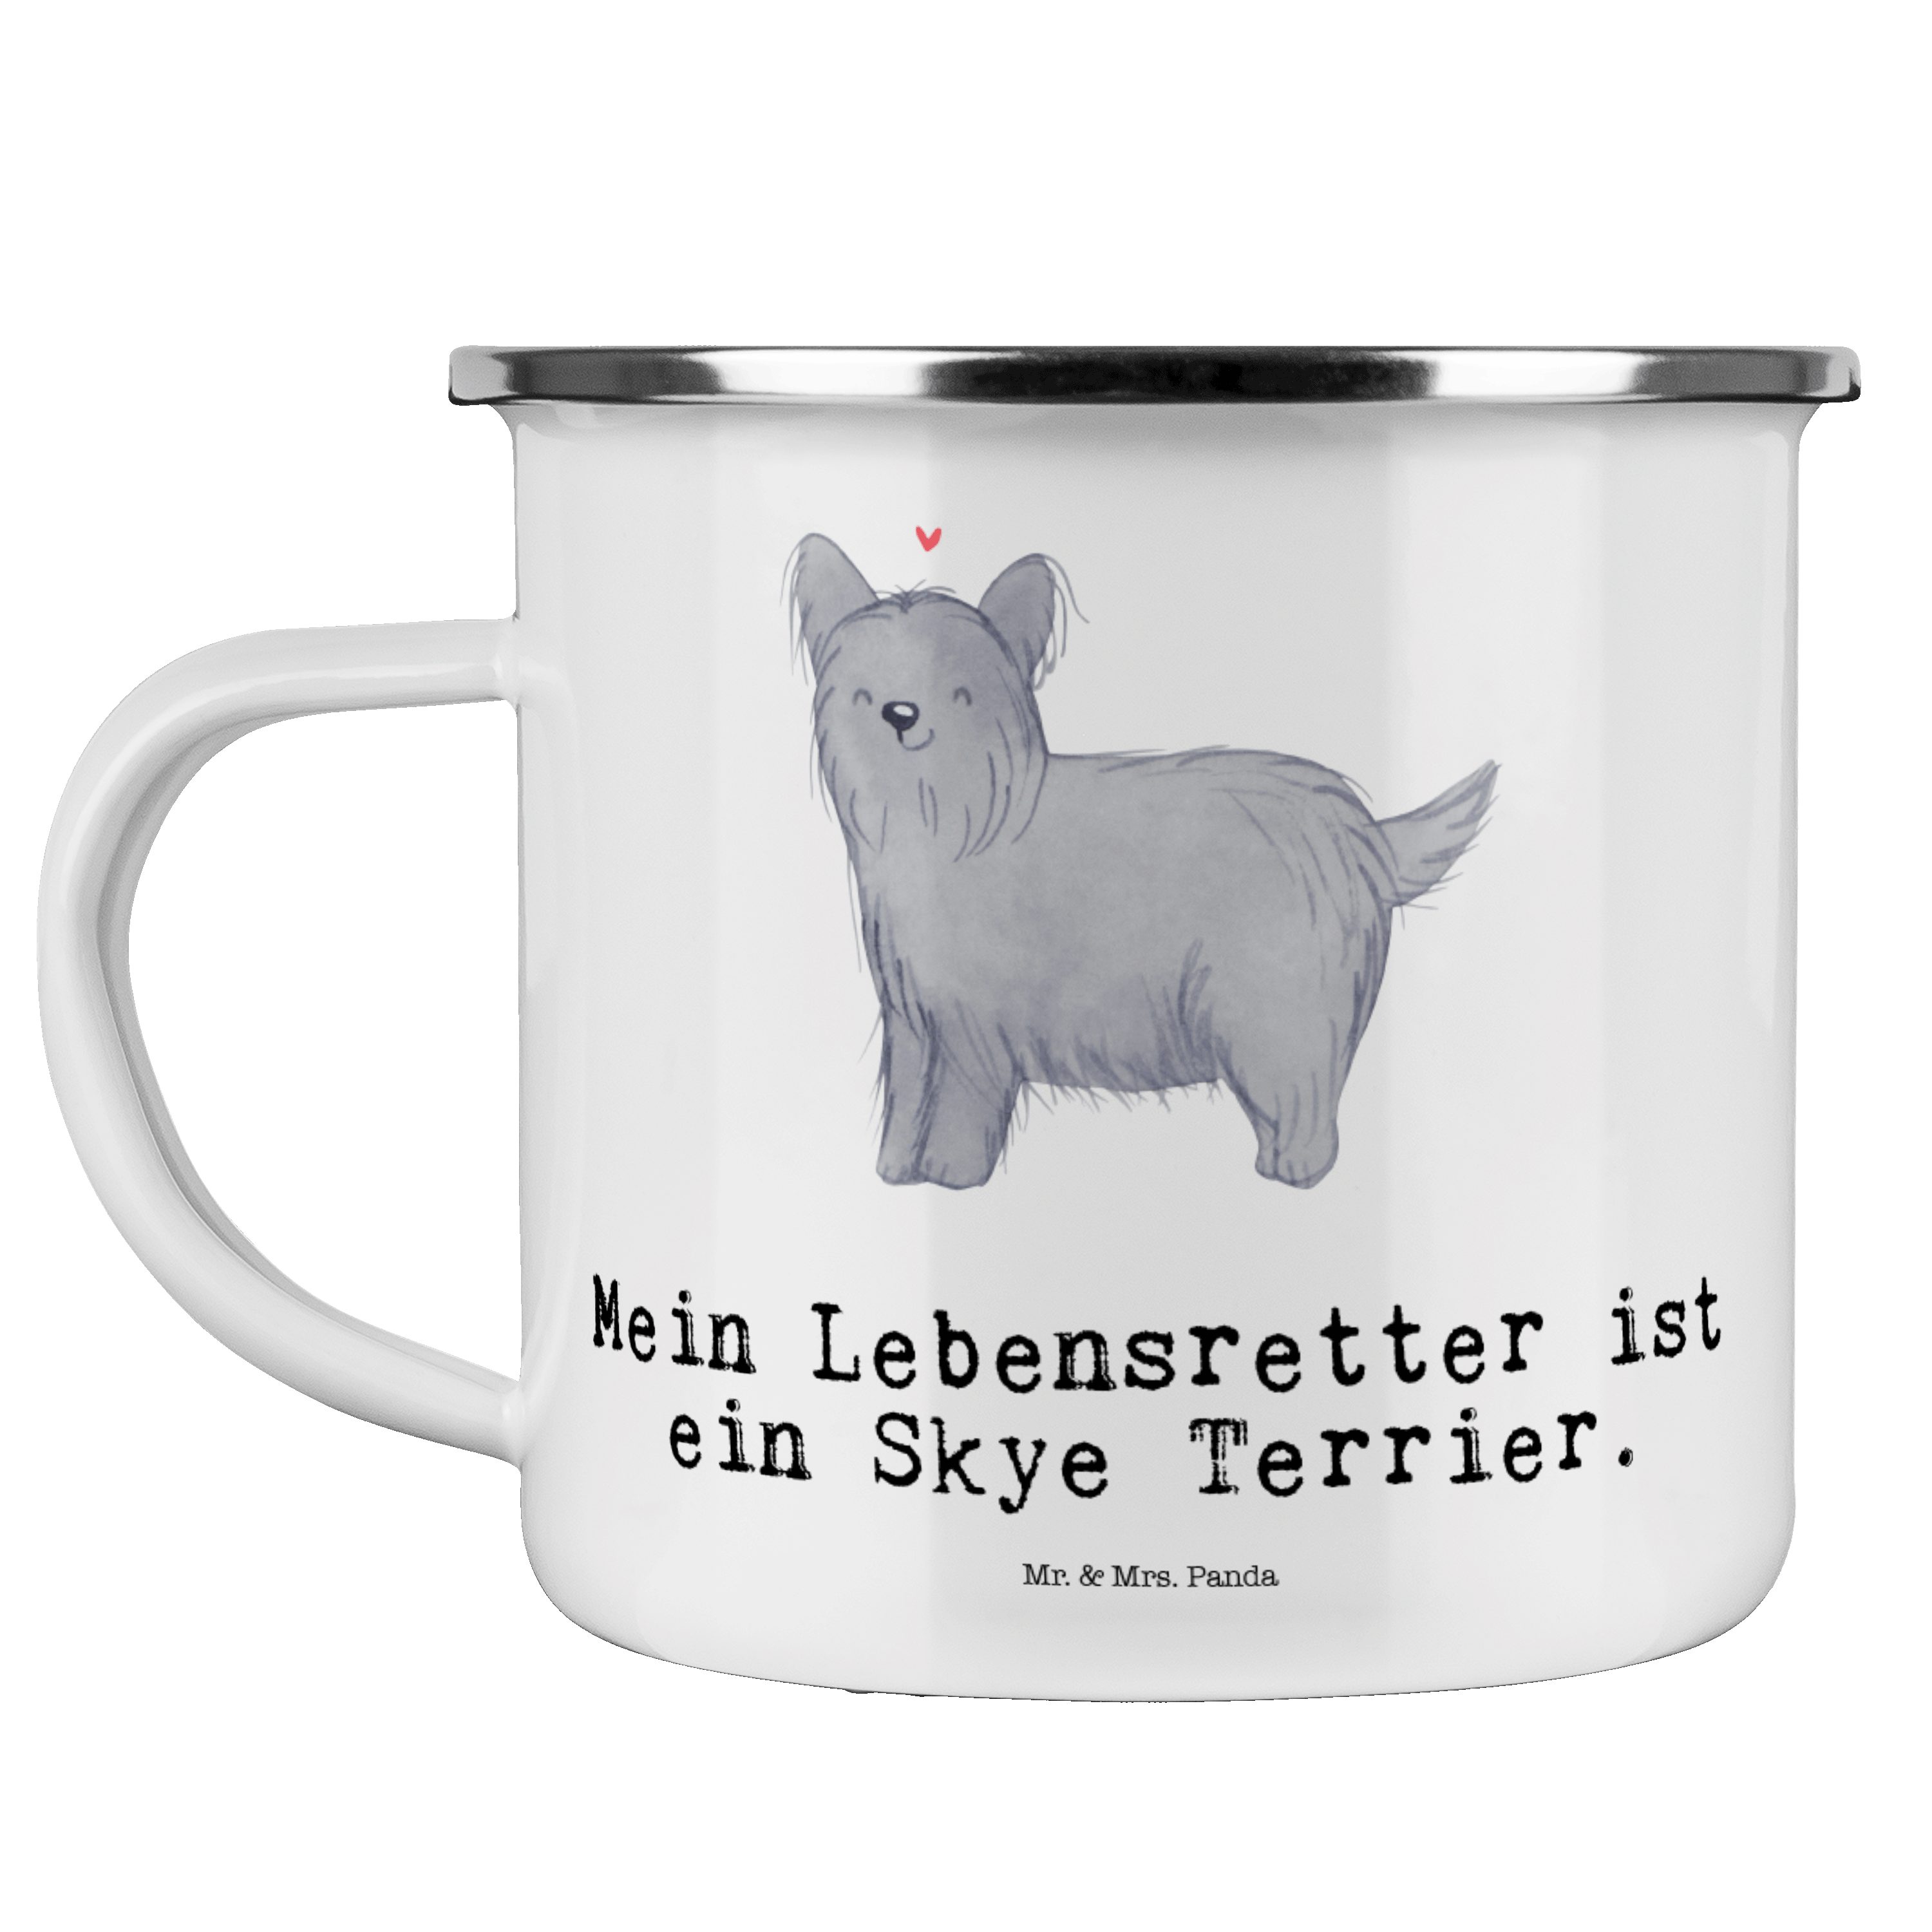 Mr. & Mrs. Panda Becher Skye Terrier Lebensretter - Weiß - Geschenk, Metalltasse für Camping, Emaille